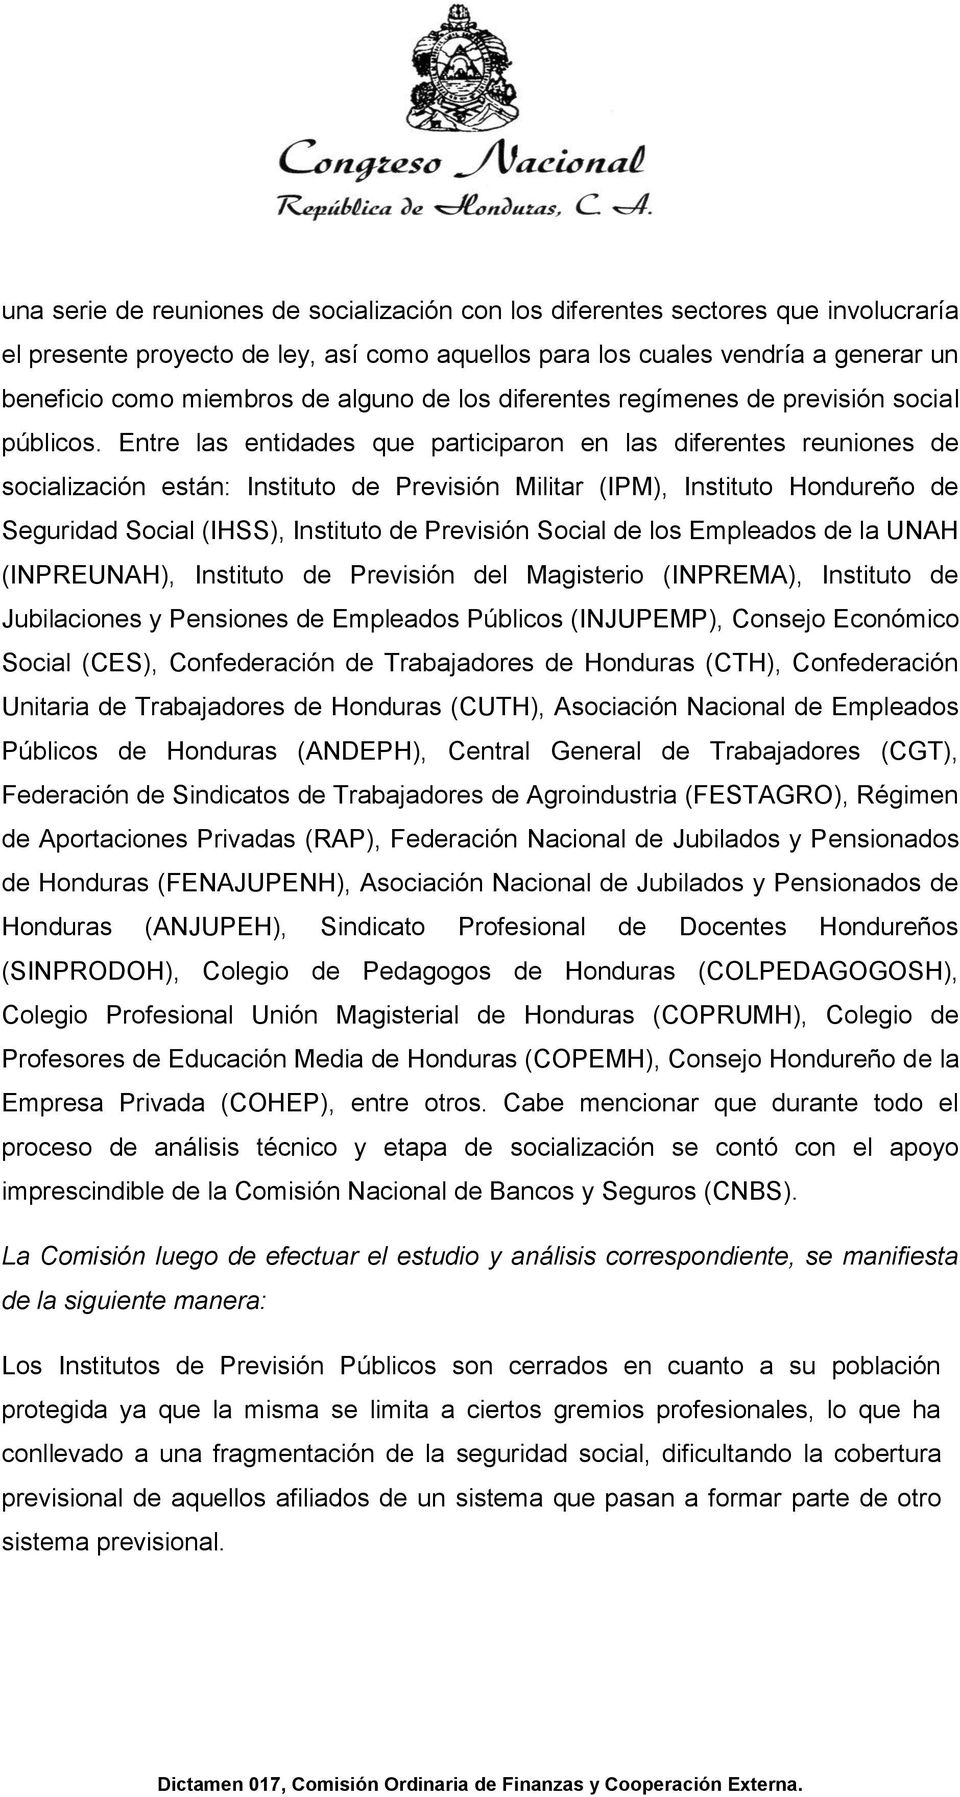 Entre las entidades que participaron en las diferentes reuniones de socialización están: Instituto de Previsión Militar (IPM), Instituto Hondureño de Seguridad Social (IHSS), Instituto de Previsión